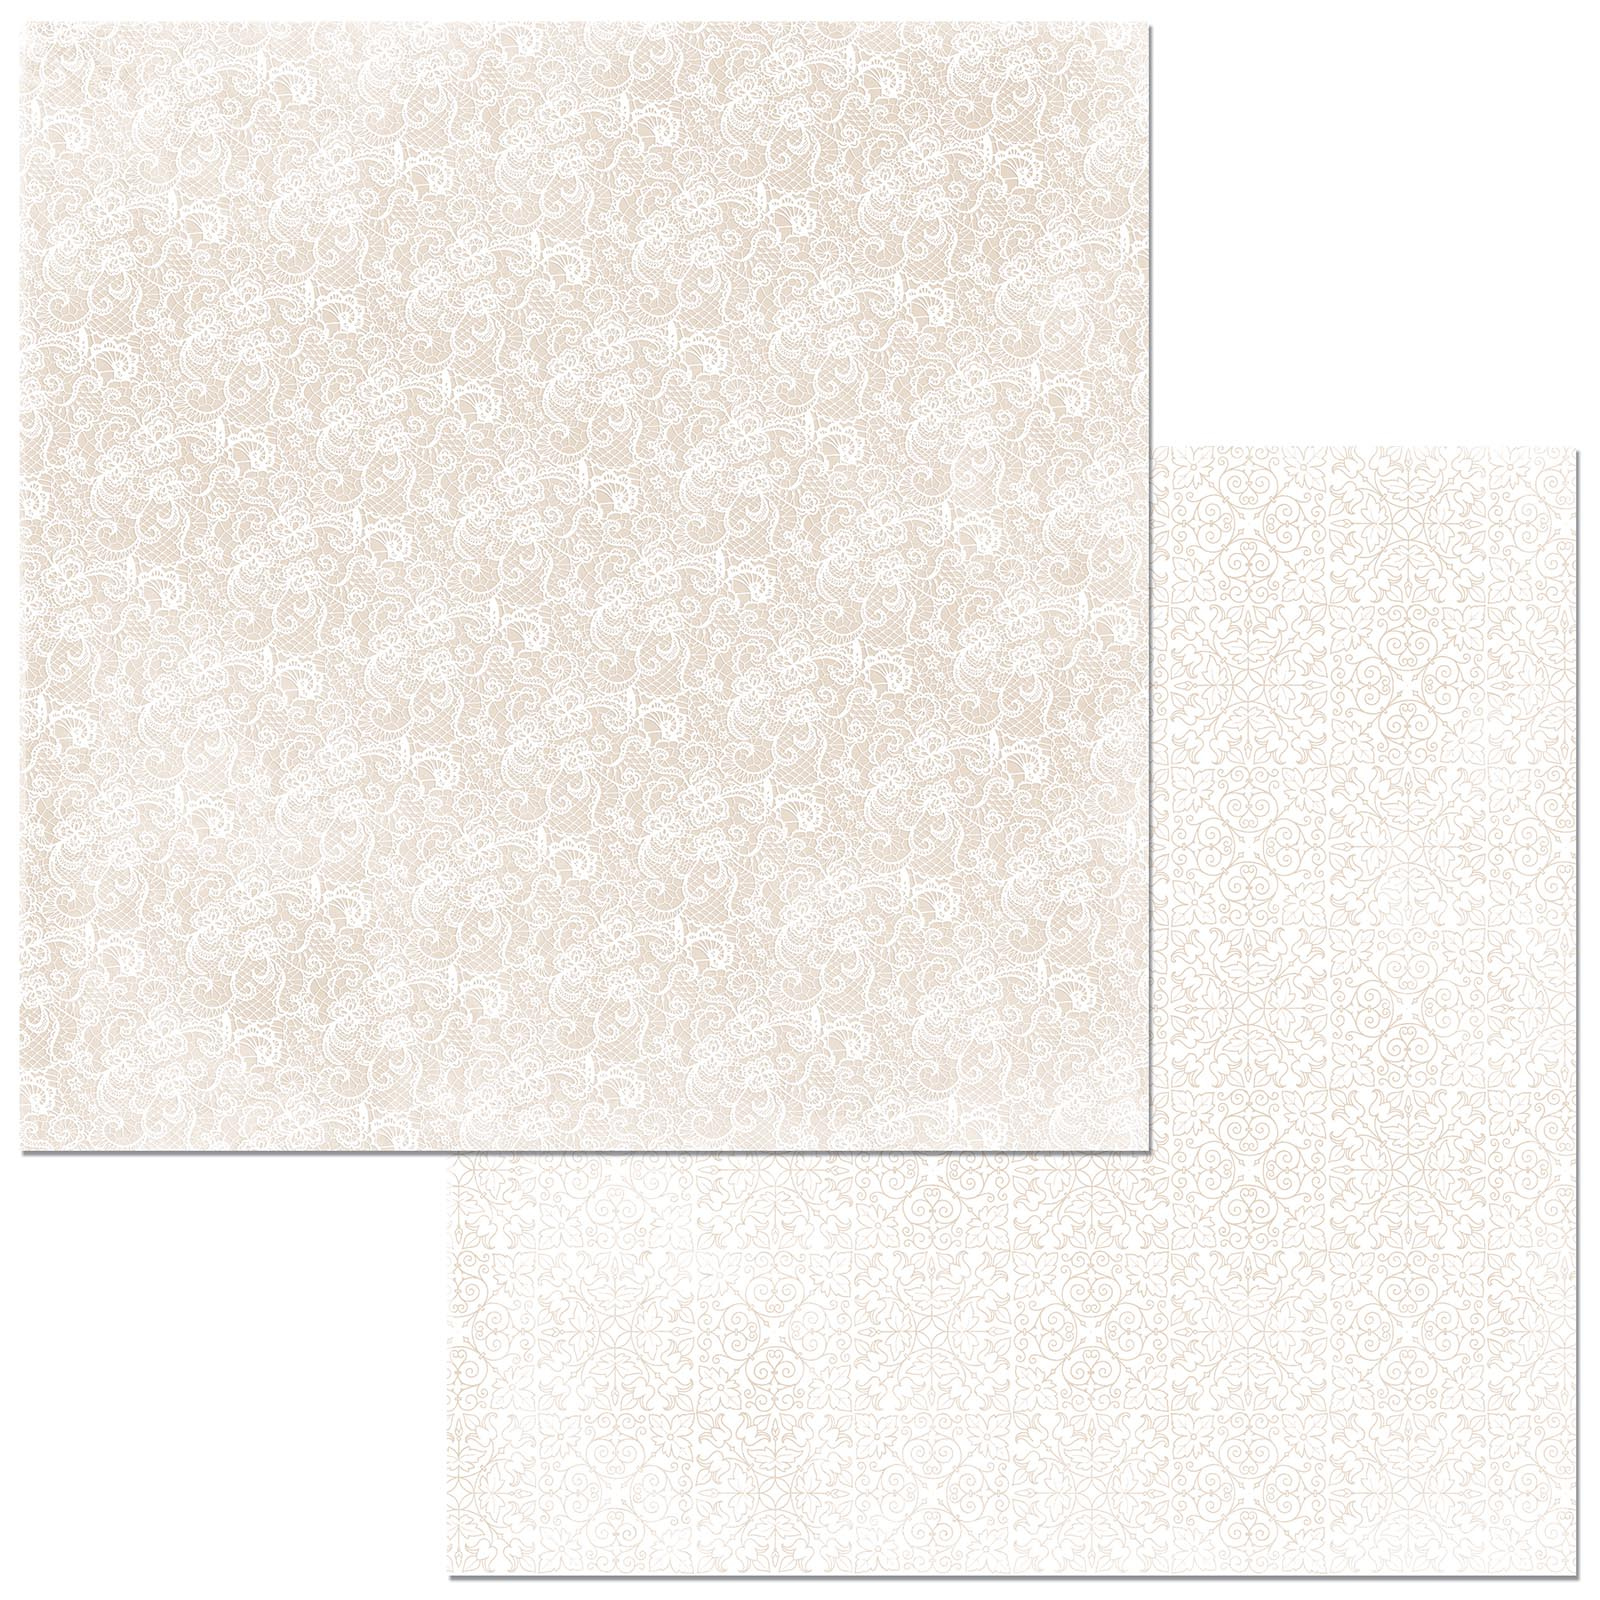 Лист двусторонней бумаги «Lace Sugar» к коллекции «Double Dot» 30,5х30,5 см, от BoBunny